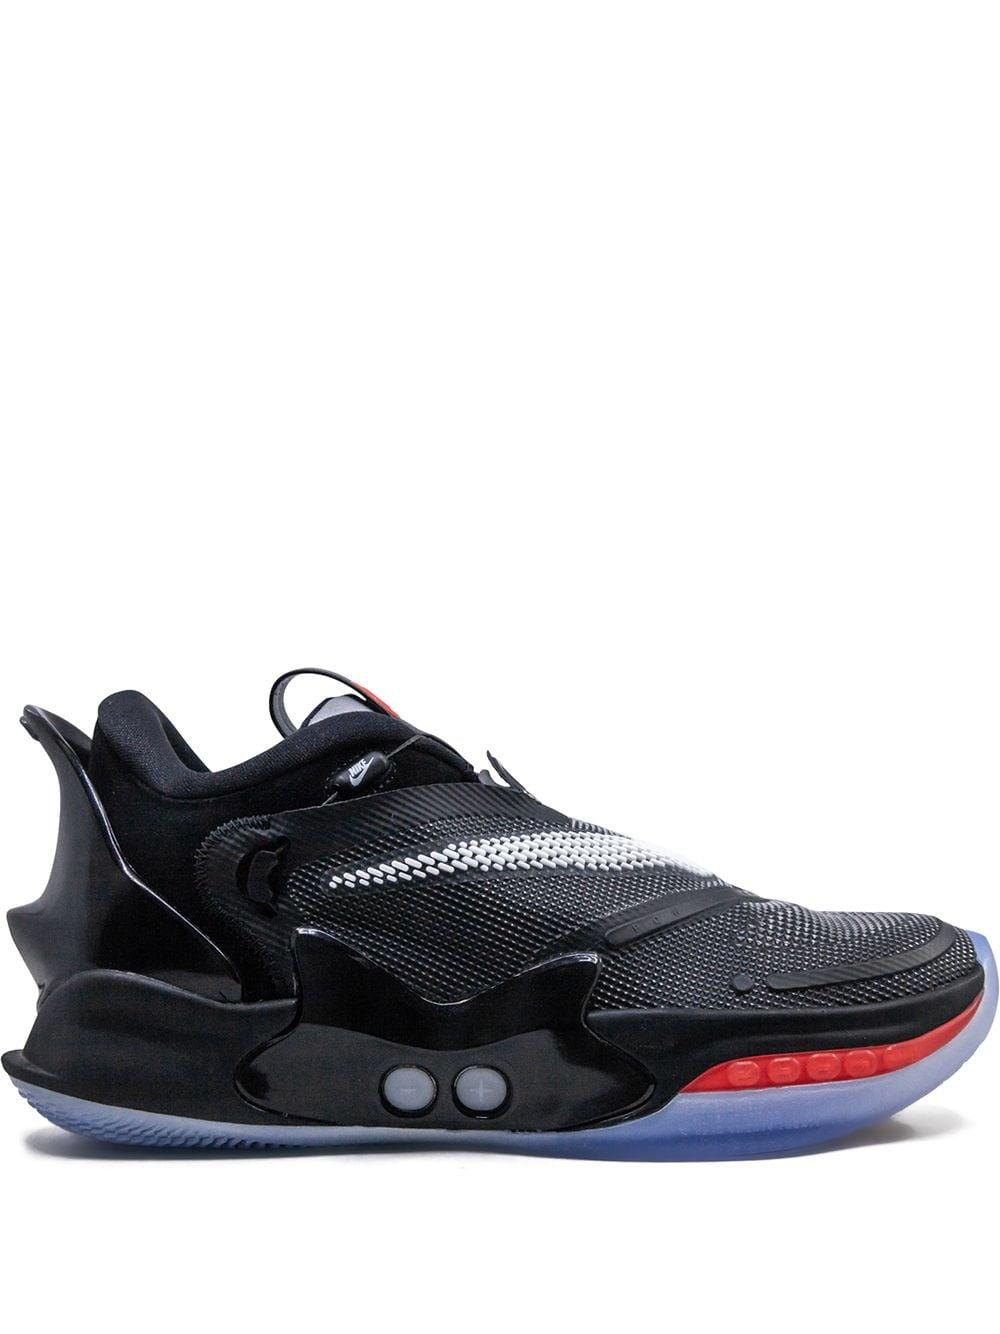 Nike Adapt Bb 2.0 Basketball Shoe in Black,Bright Crimson,White (Black) for  Men | Lyst